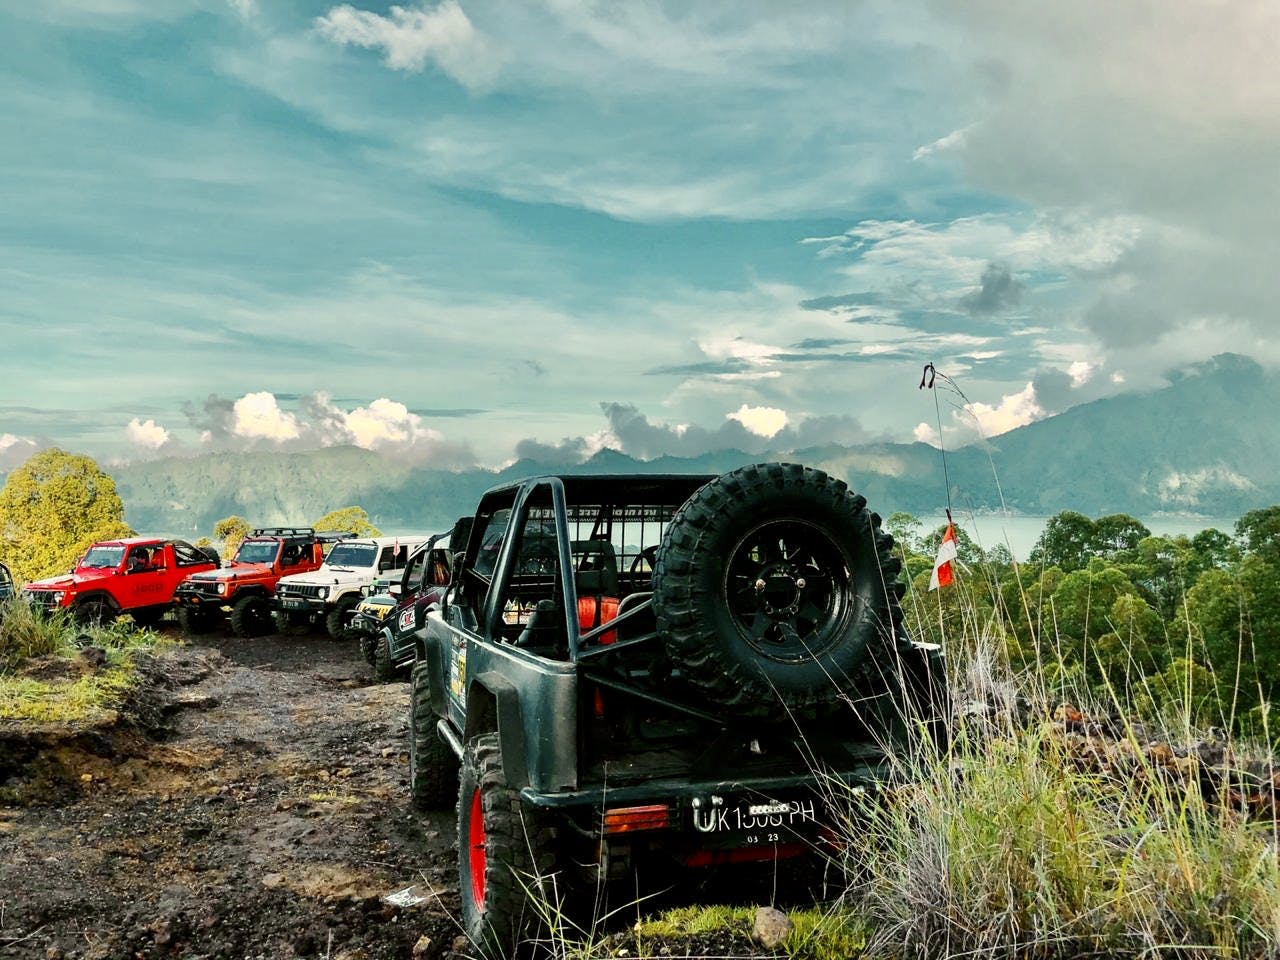 4x4 classic jeep tour with Batur Bali sunrise Musement